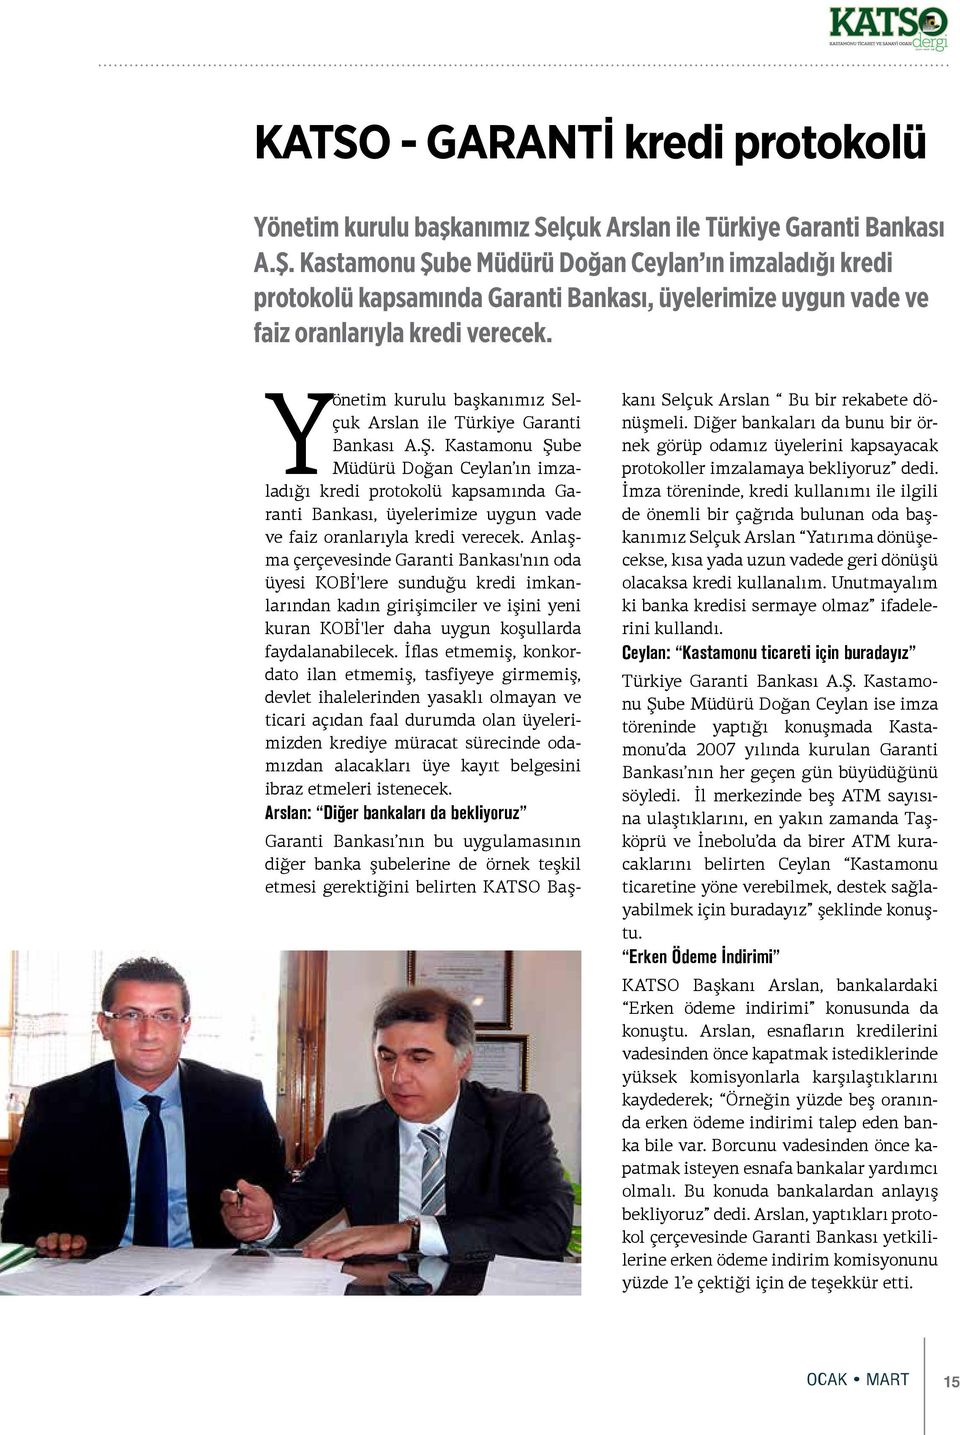 Yönetim kurulu başkanımız Selçuk Arslan ile Türkiye Garanti Bankası A.Ş.